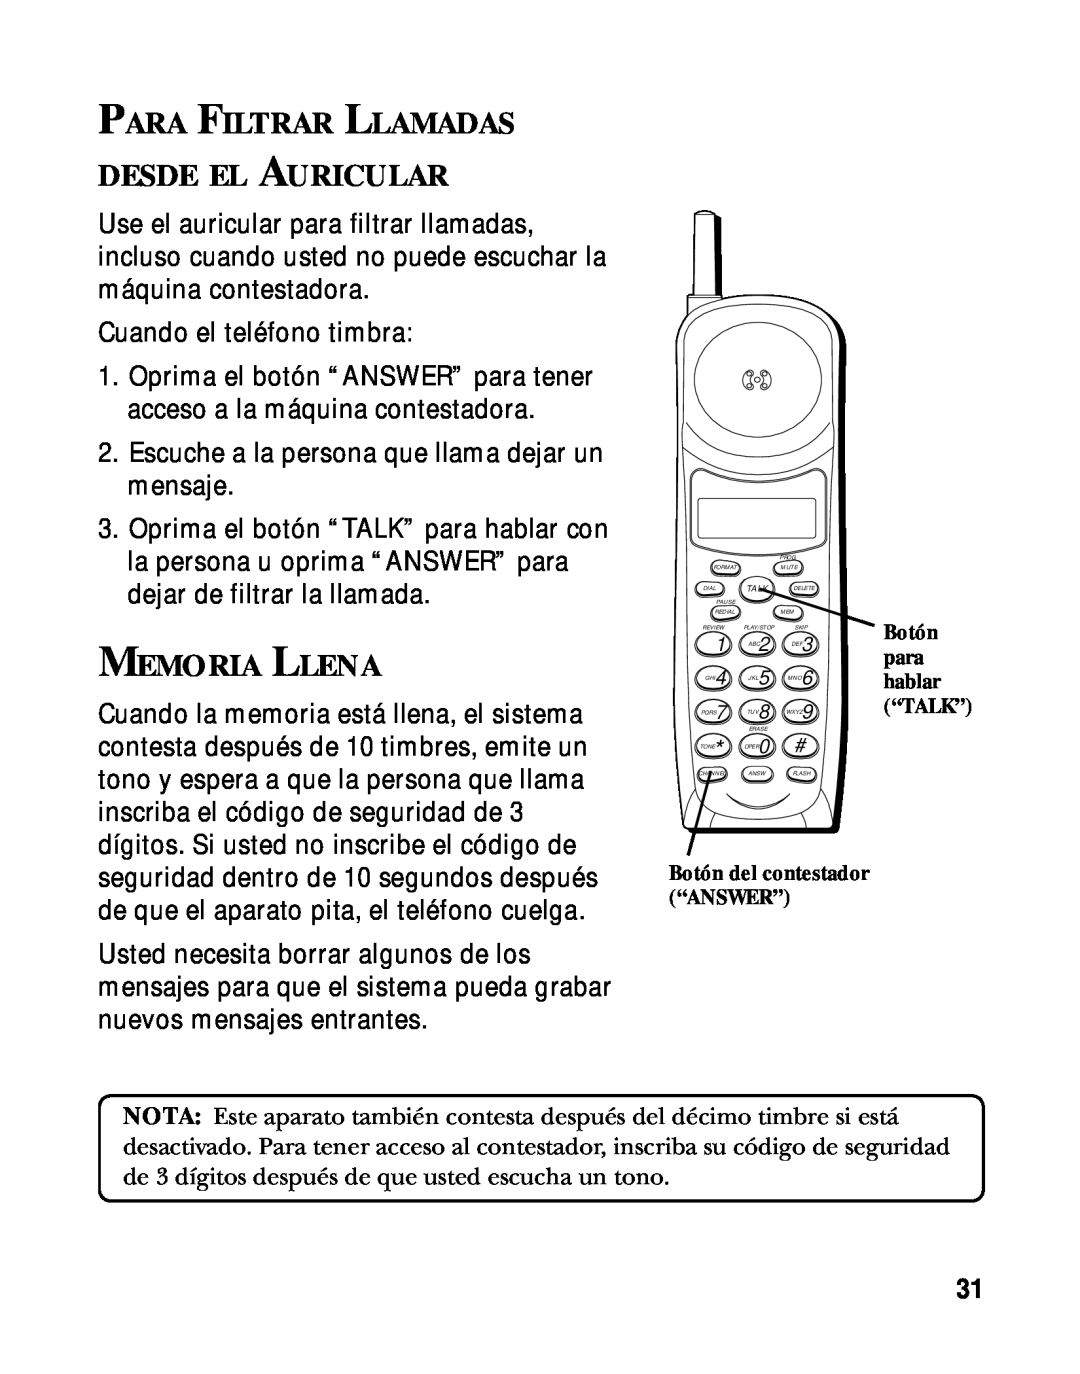 RCA 900 MHz manual Para Filtrar Llamadas Desde El Auricular, Memoria Llena 